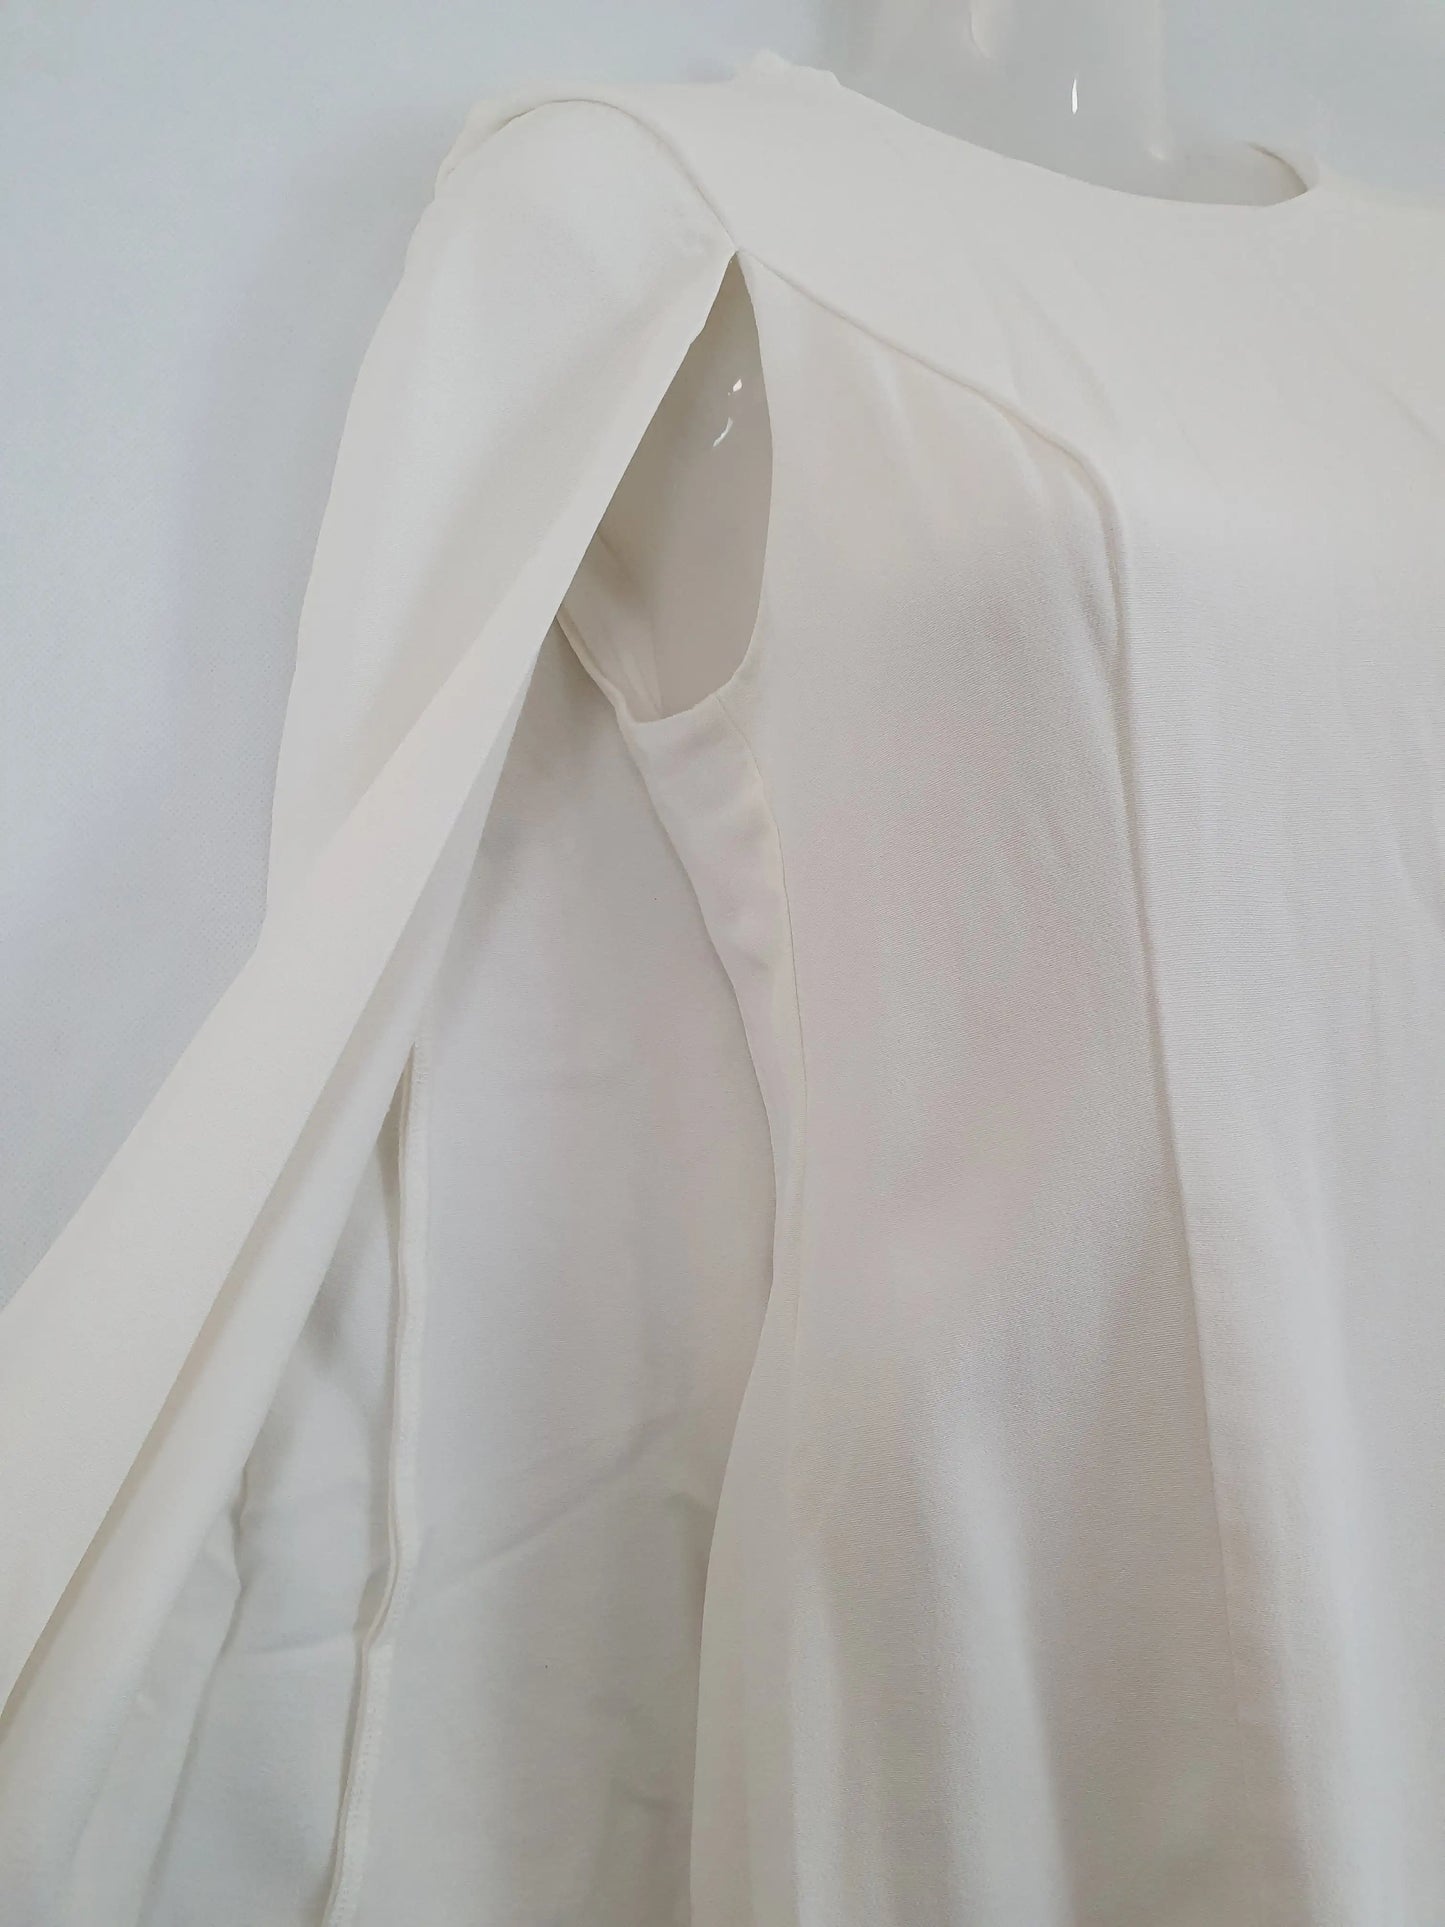 A.L.C. Designer White Cape Mini Dress Size 8 by SwapUp-Second Hand Shop-Thrift Store-Op Shop 